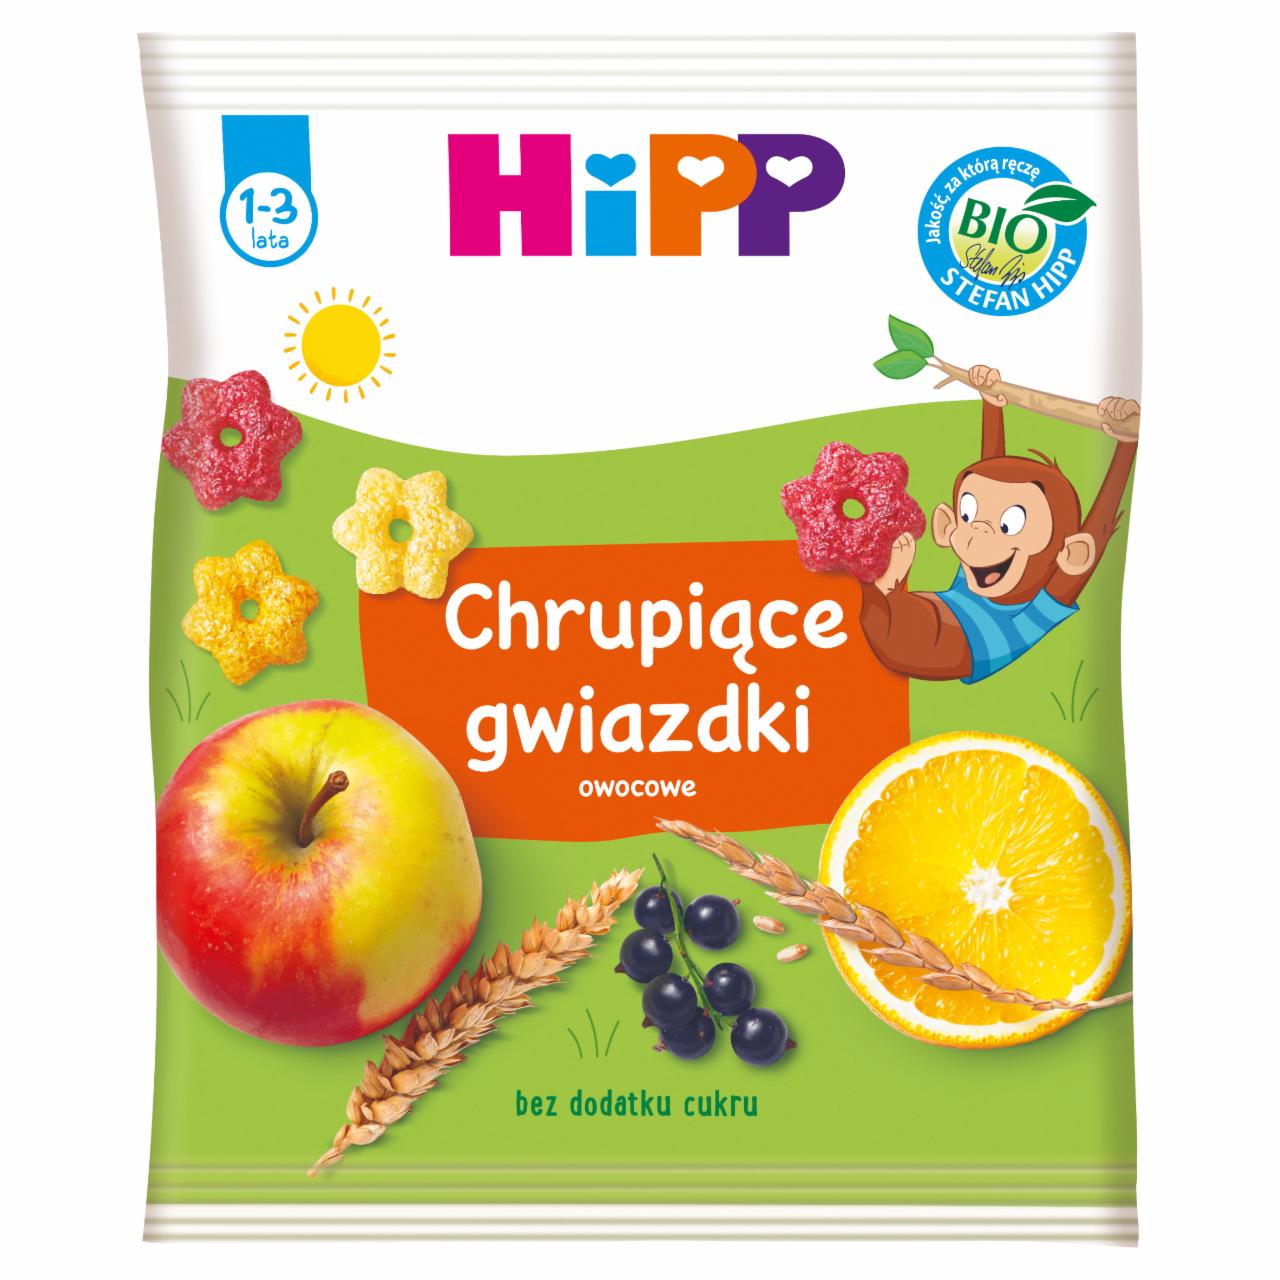 Zdjęcia - HiPP BIO Chrupiące gwiazdki owocowe dla małych dzieci 1-3 lata 30 g